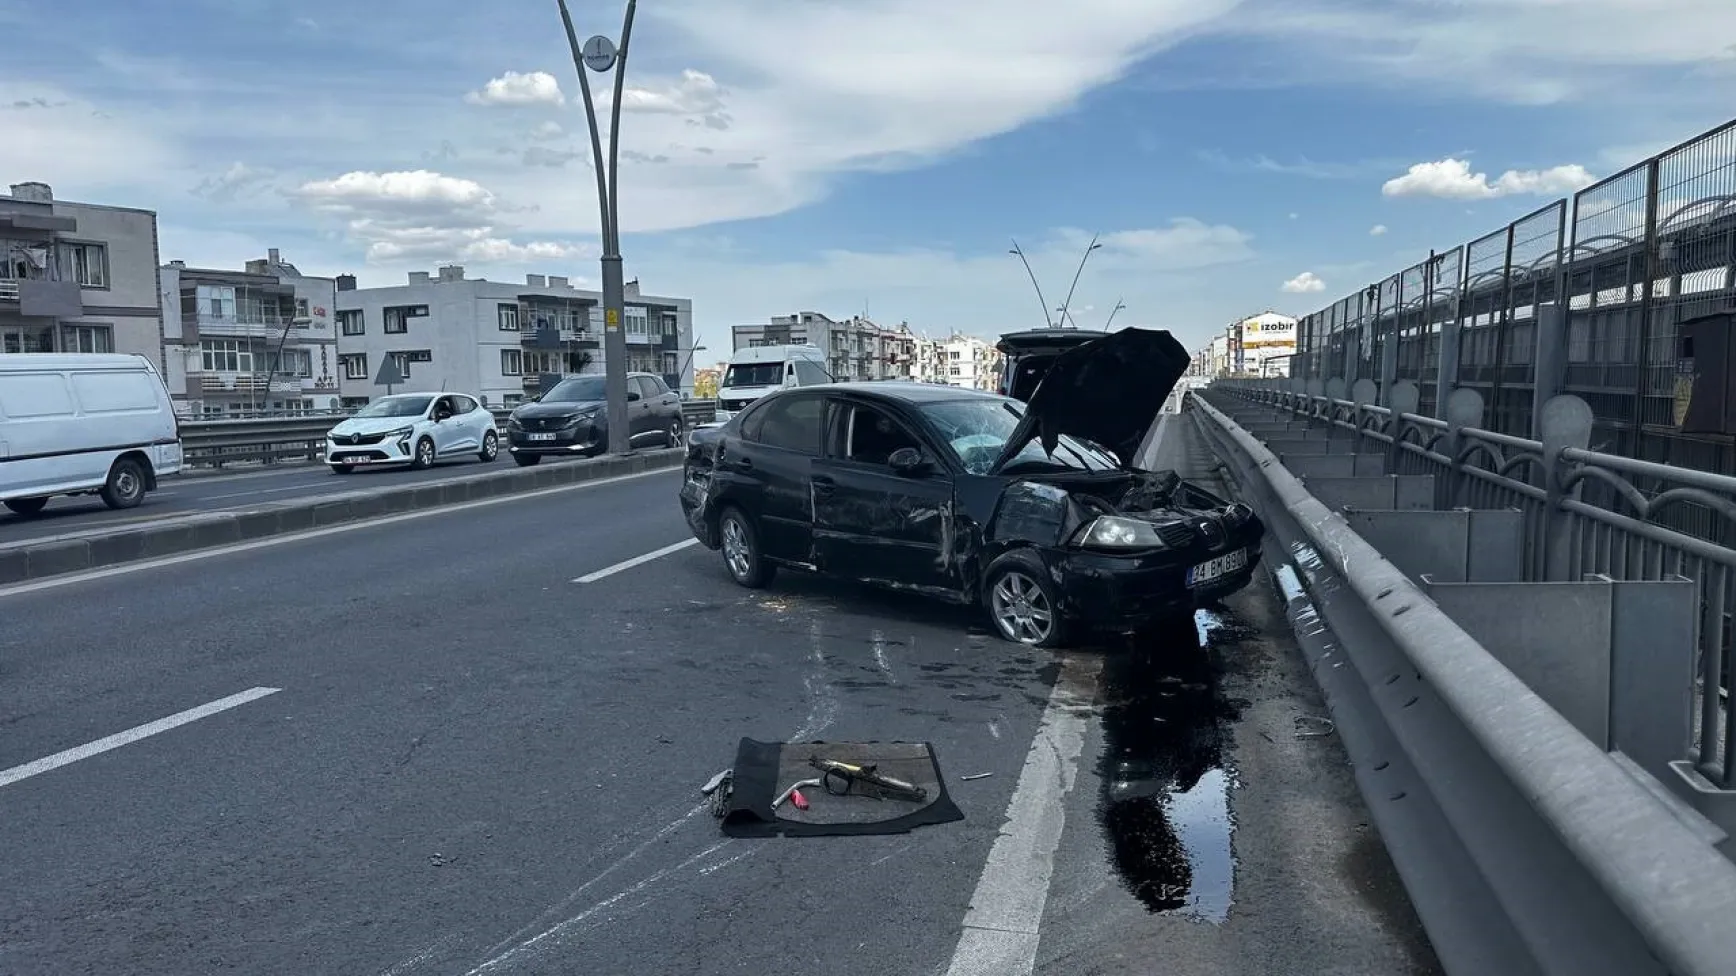 Kayseri'de otomobil aydınlatma direğine çarptı: 1'i ağır 2 yaralı